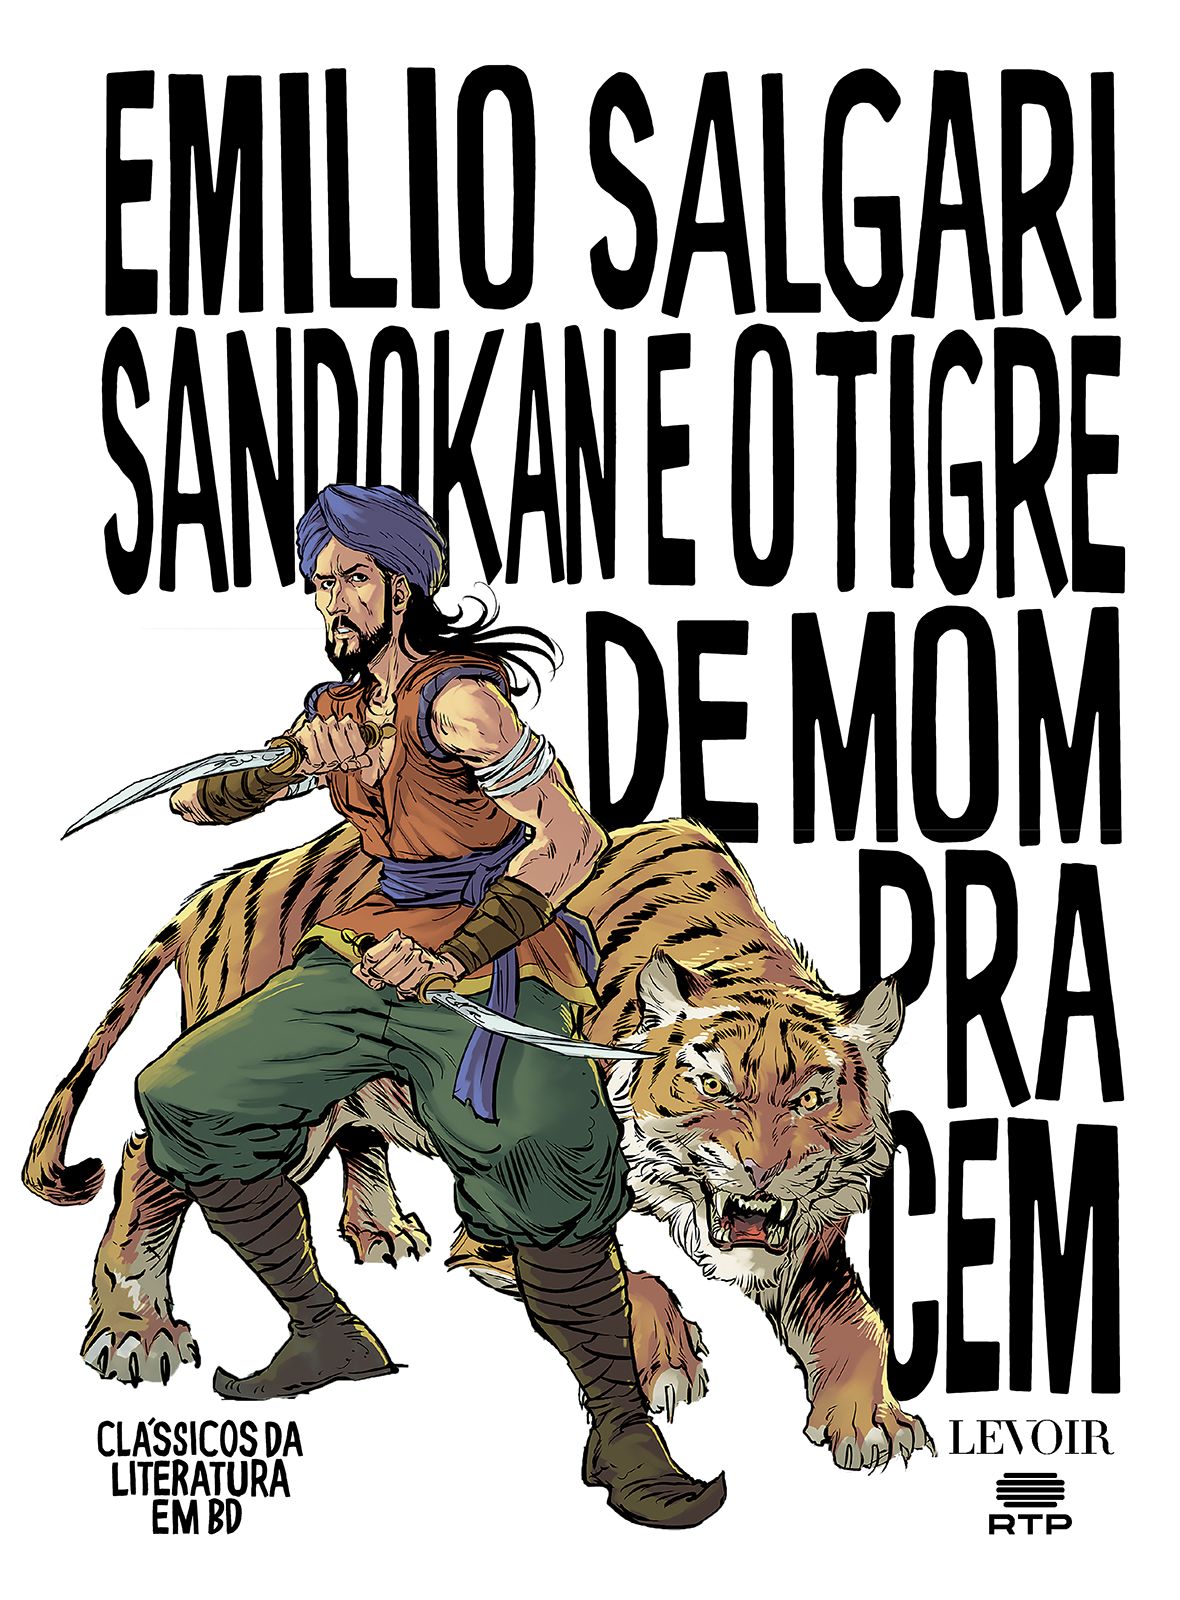 Sandokan e o Tigre de Mompracem